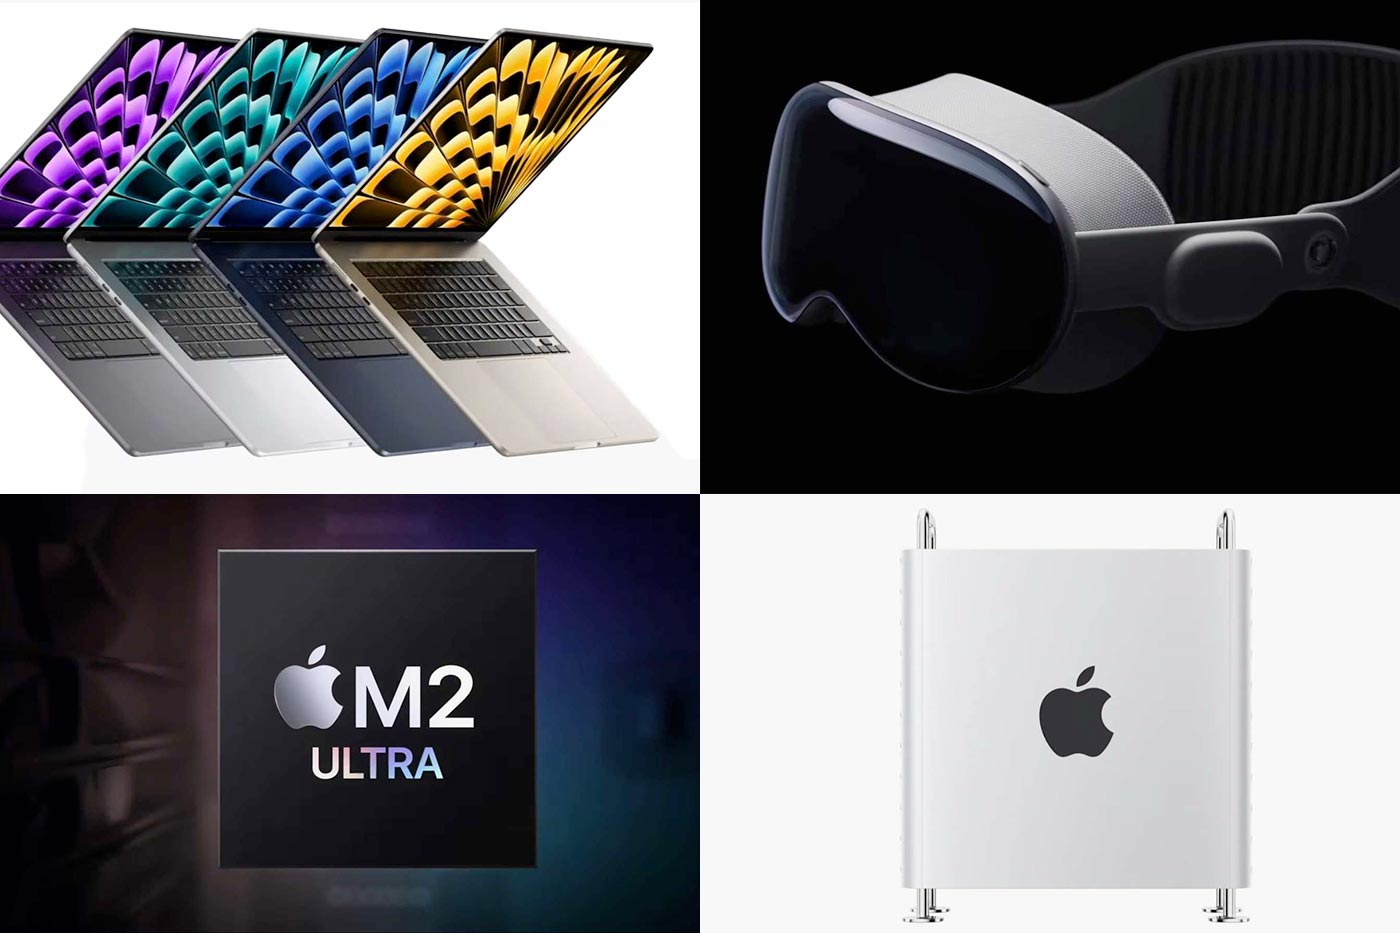 Le Apple MacBook Air 13 en promotion ! Mais aussi TV LG OLED et batterie  externe.